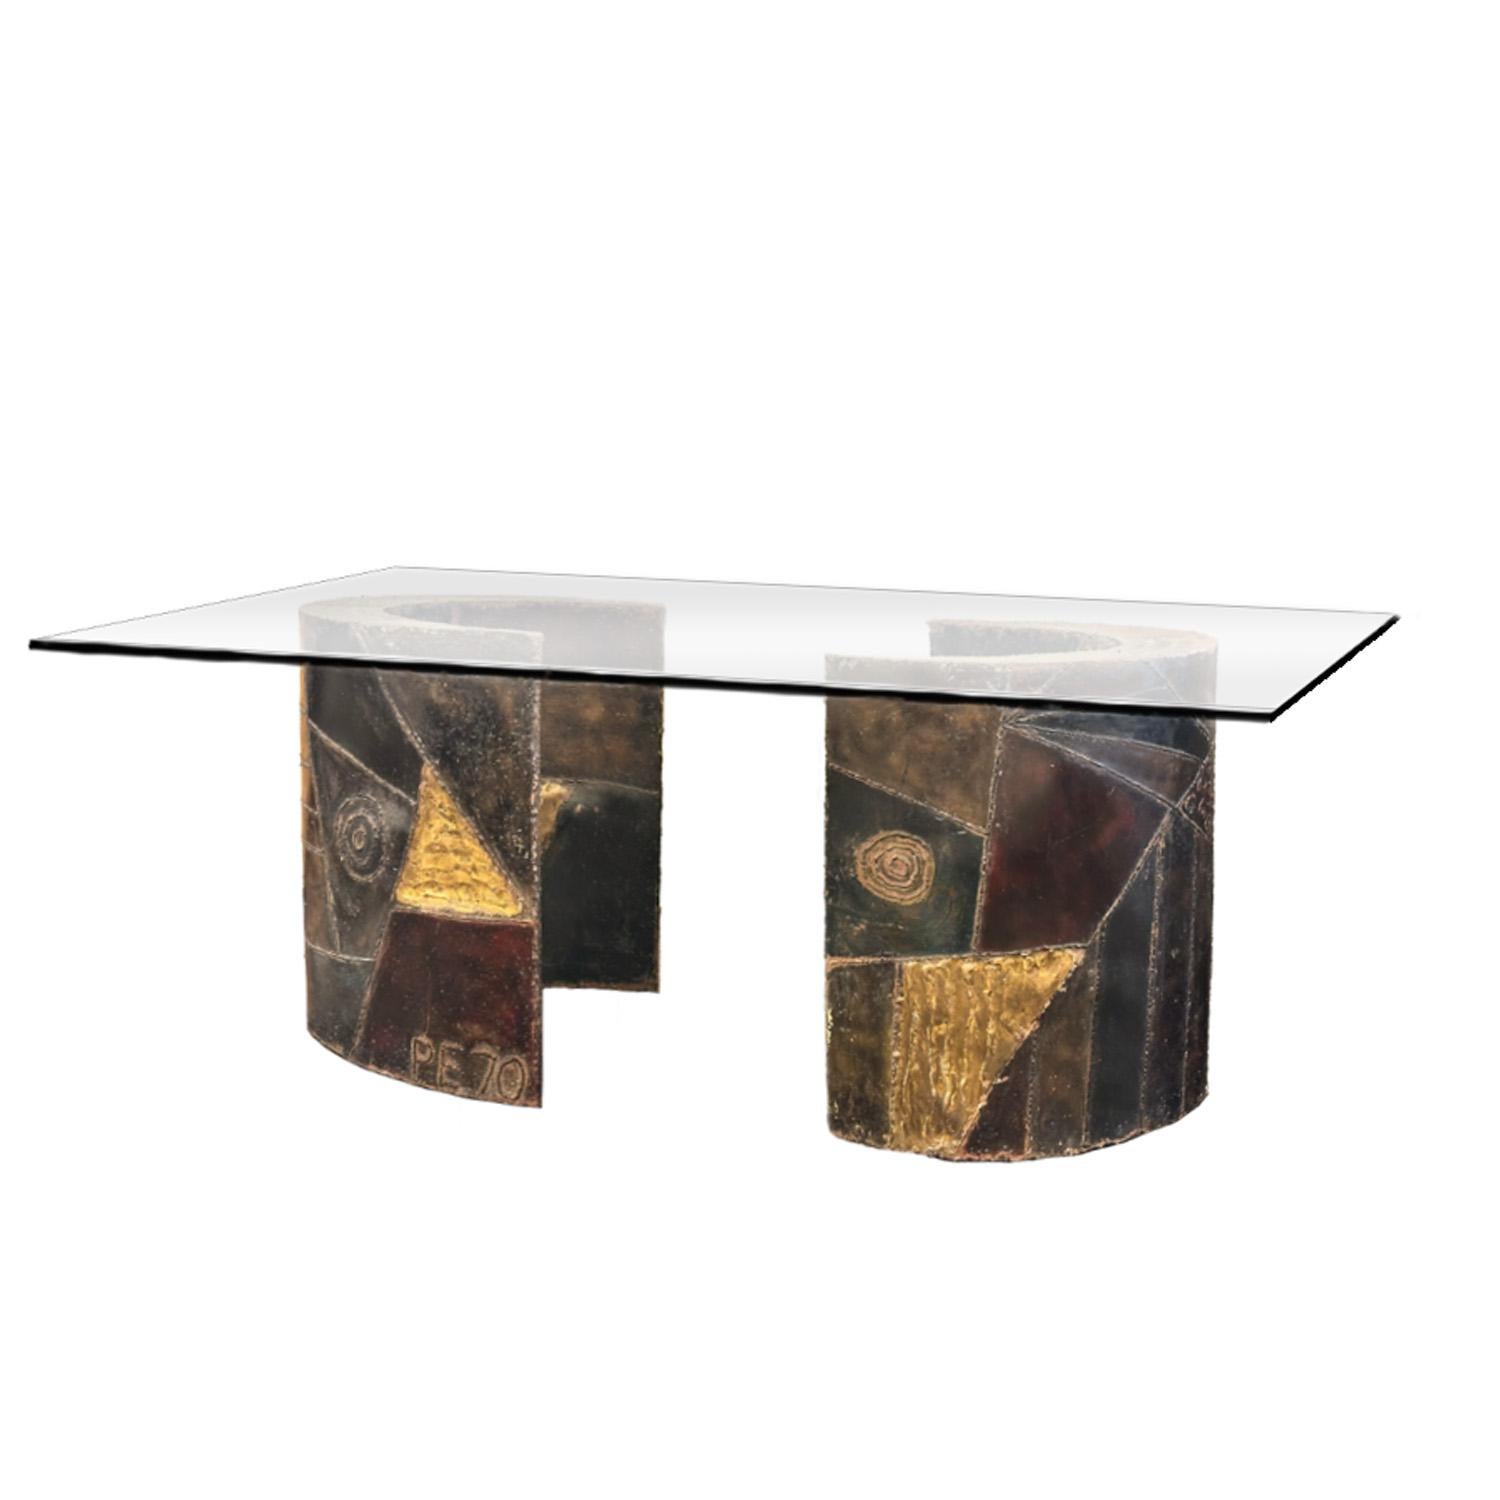 Zwei halbmondförmige Tischgestelle aus geschweißtem Stahl im brutalistischen Stil, verziert mit farbiger Emaille und vergoldeten Akzenten von Paul Evans für Directional Furniture. Die Untergestelle tragen eine dicke Glastischplatte, und eines ist